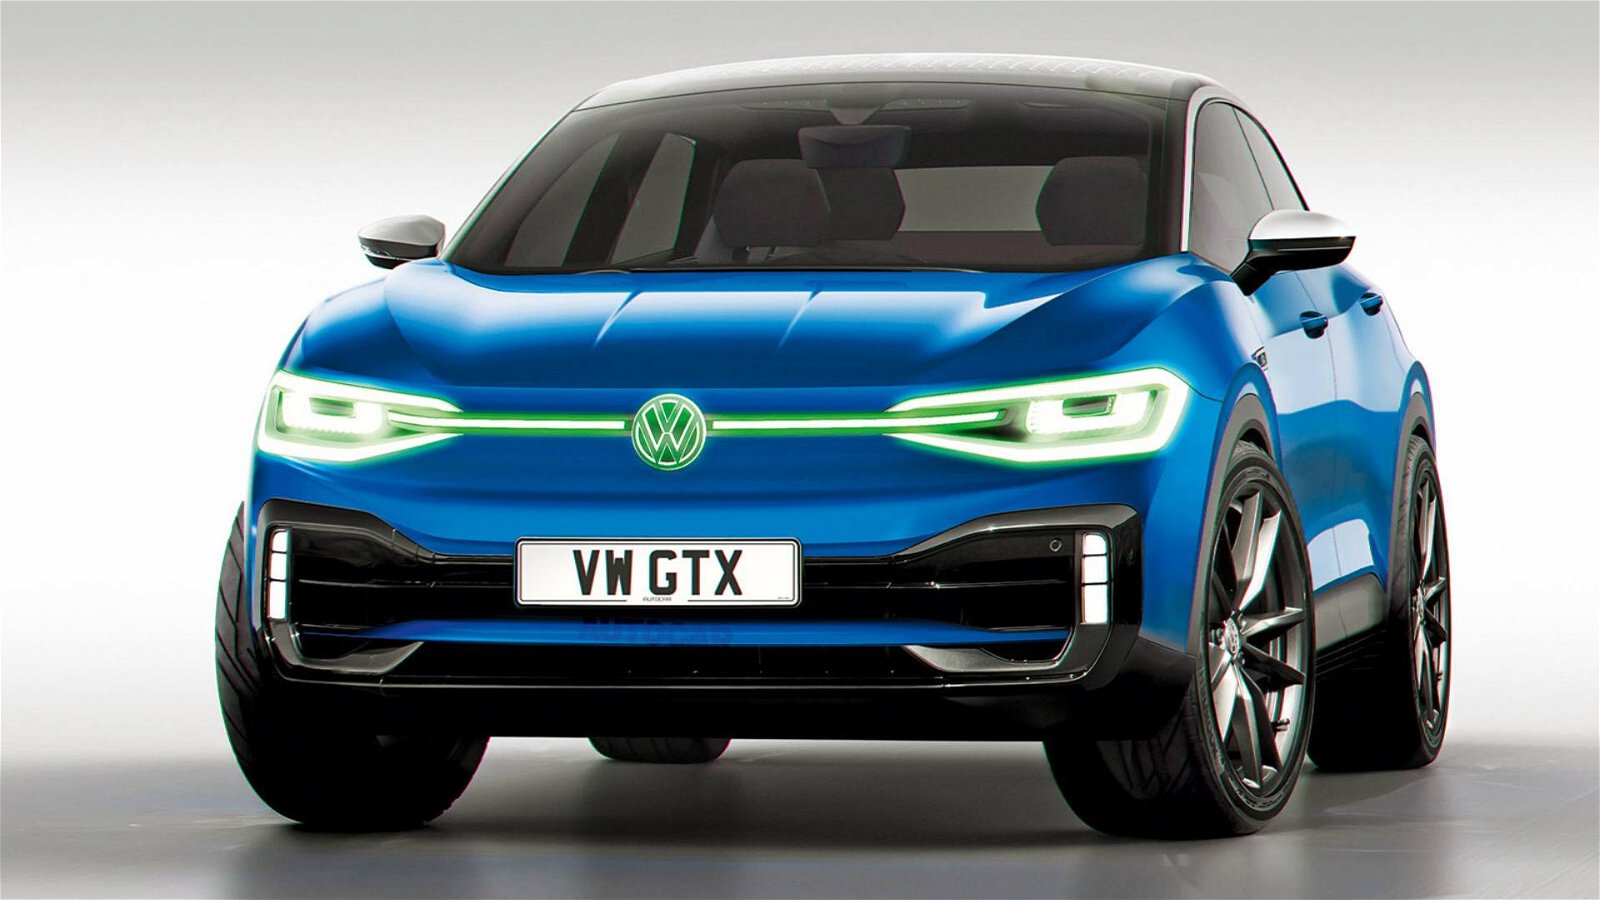 Immagine di Volkswagen: in arrivo nuove auto prestazionali siglate GTX?